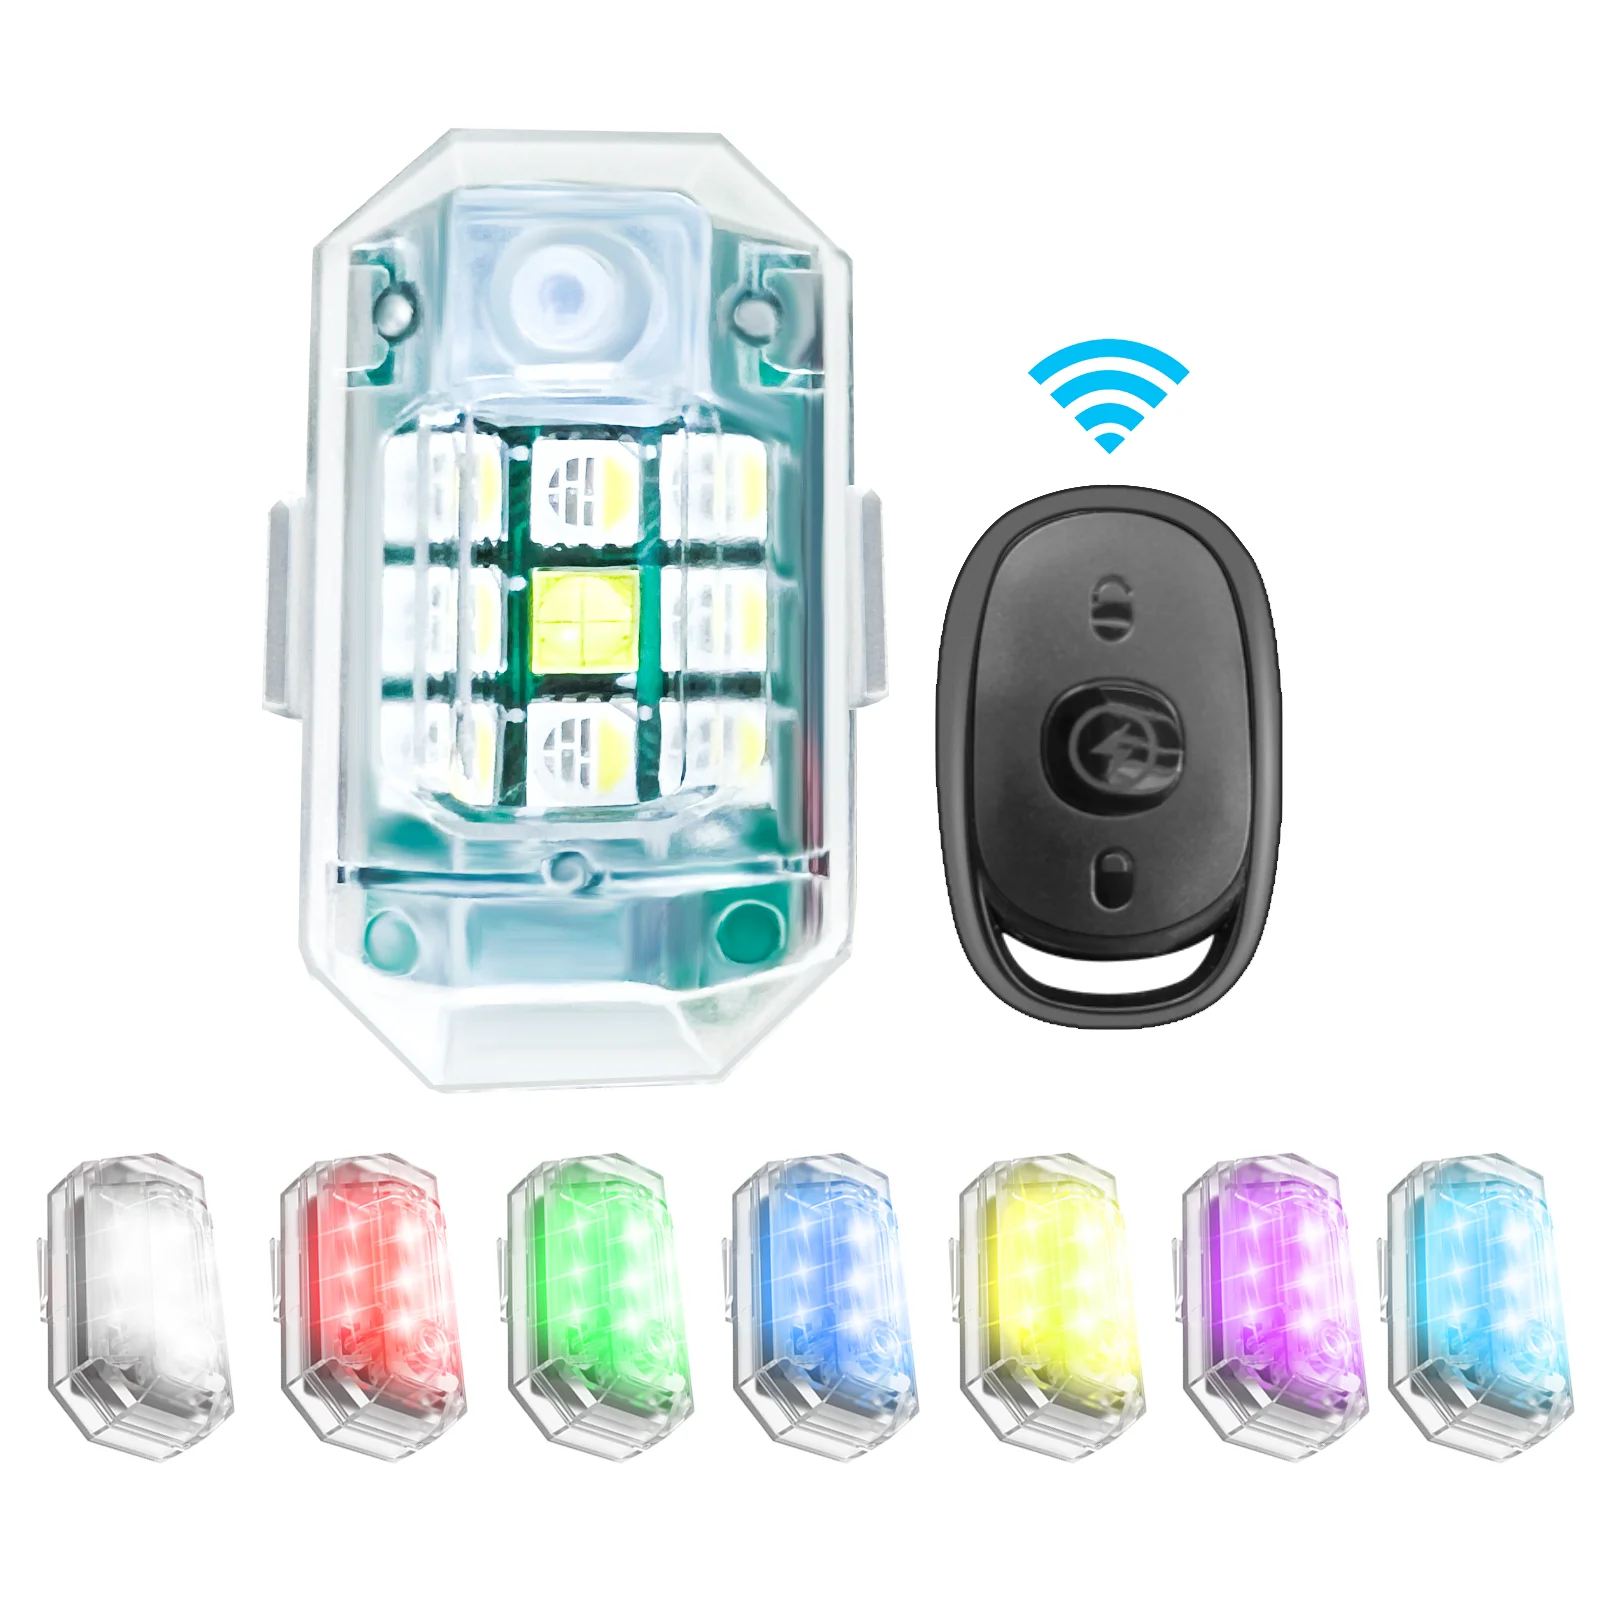 Drahtlose Fernbedienung LED Blitzlicht 7 Farben Anti Kollisions Warnlampe  Licht USB Aufladung Für Motorrad Auto Fahrrad Roller Von 8,85 €